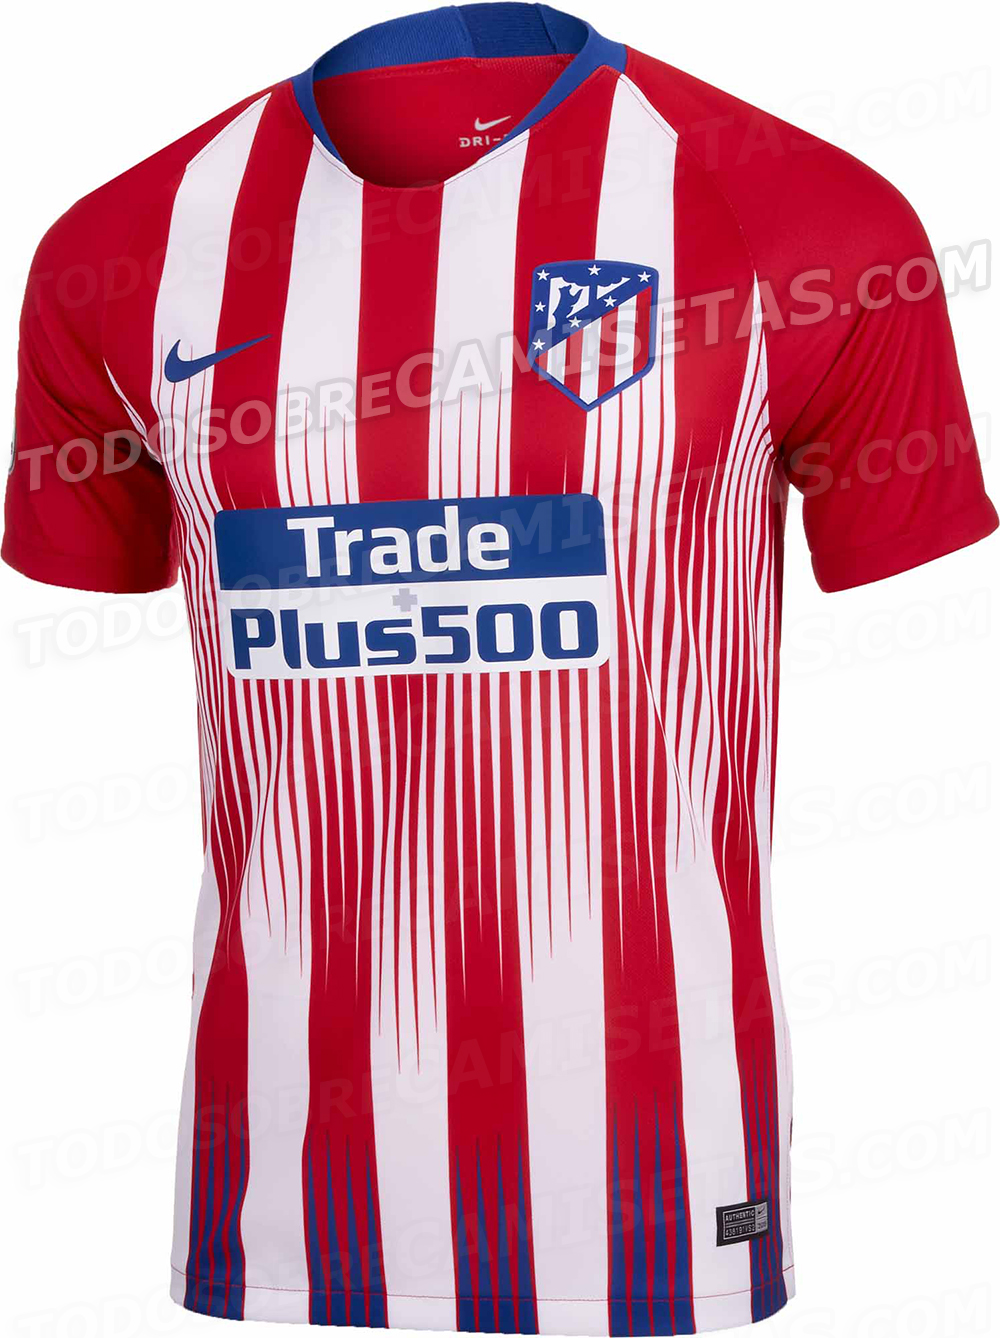 Camiseta de Atletico de Madrid 2018-19